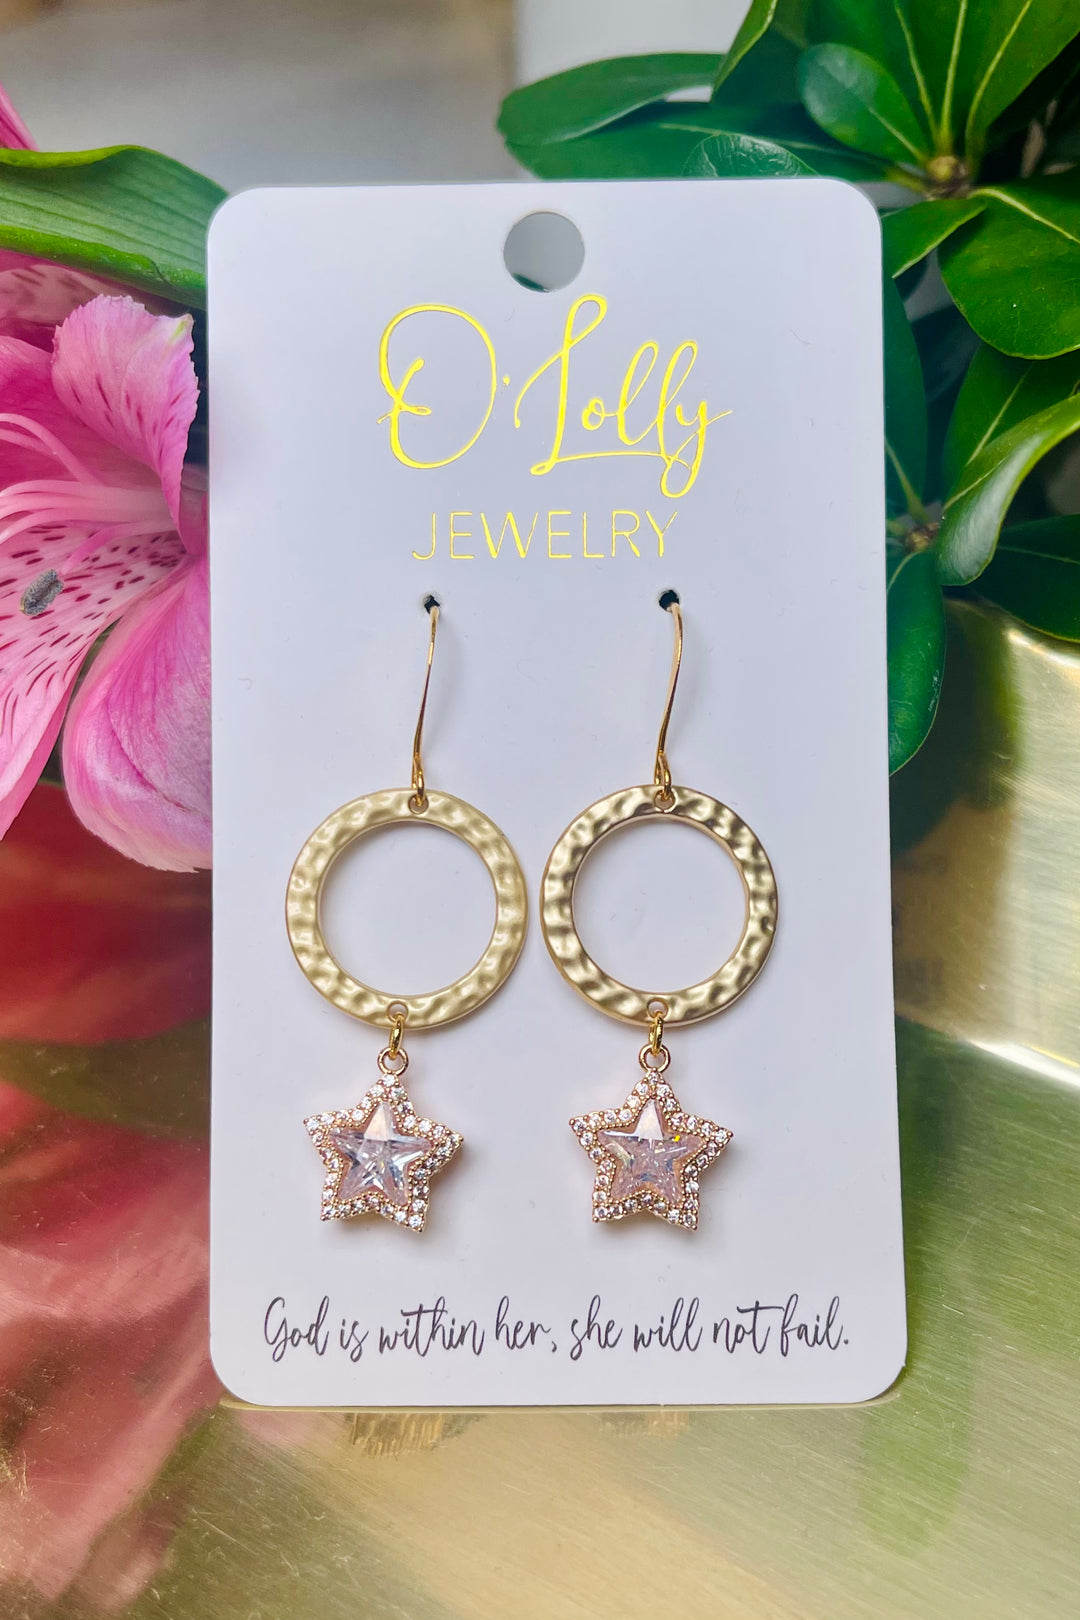 O'Lolly "Starla" Earrings